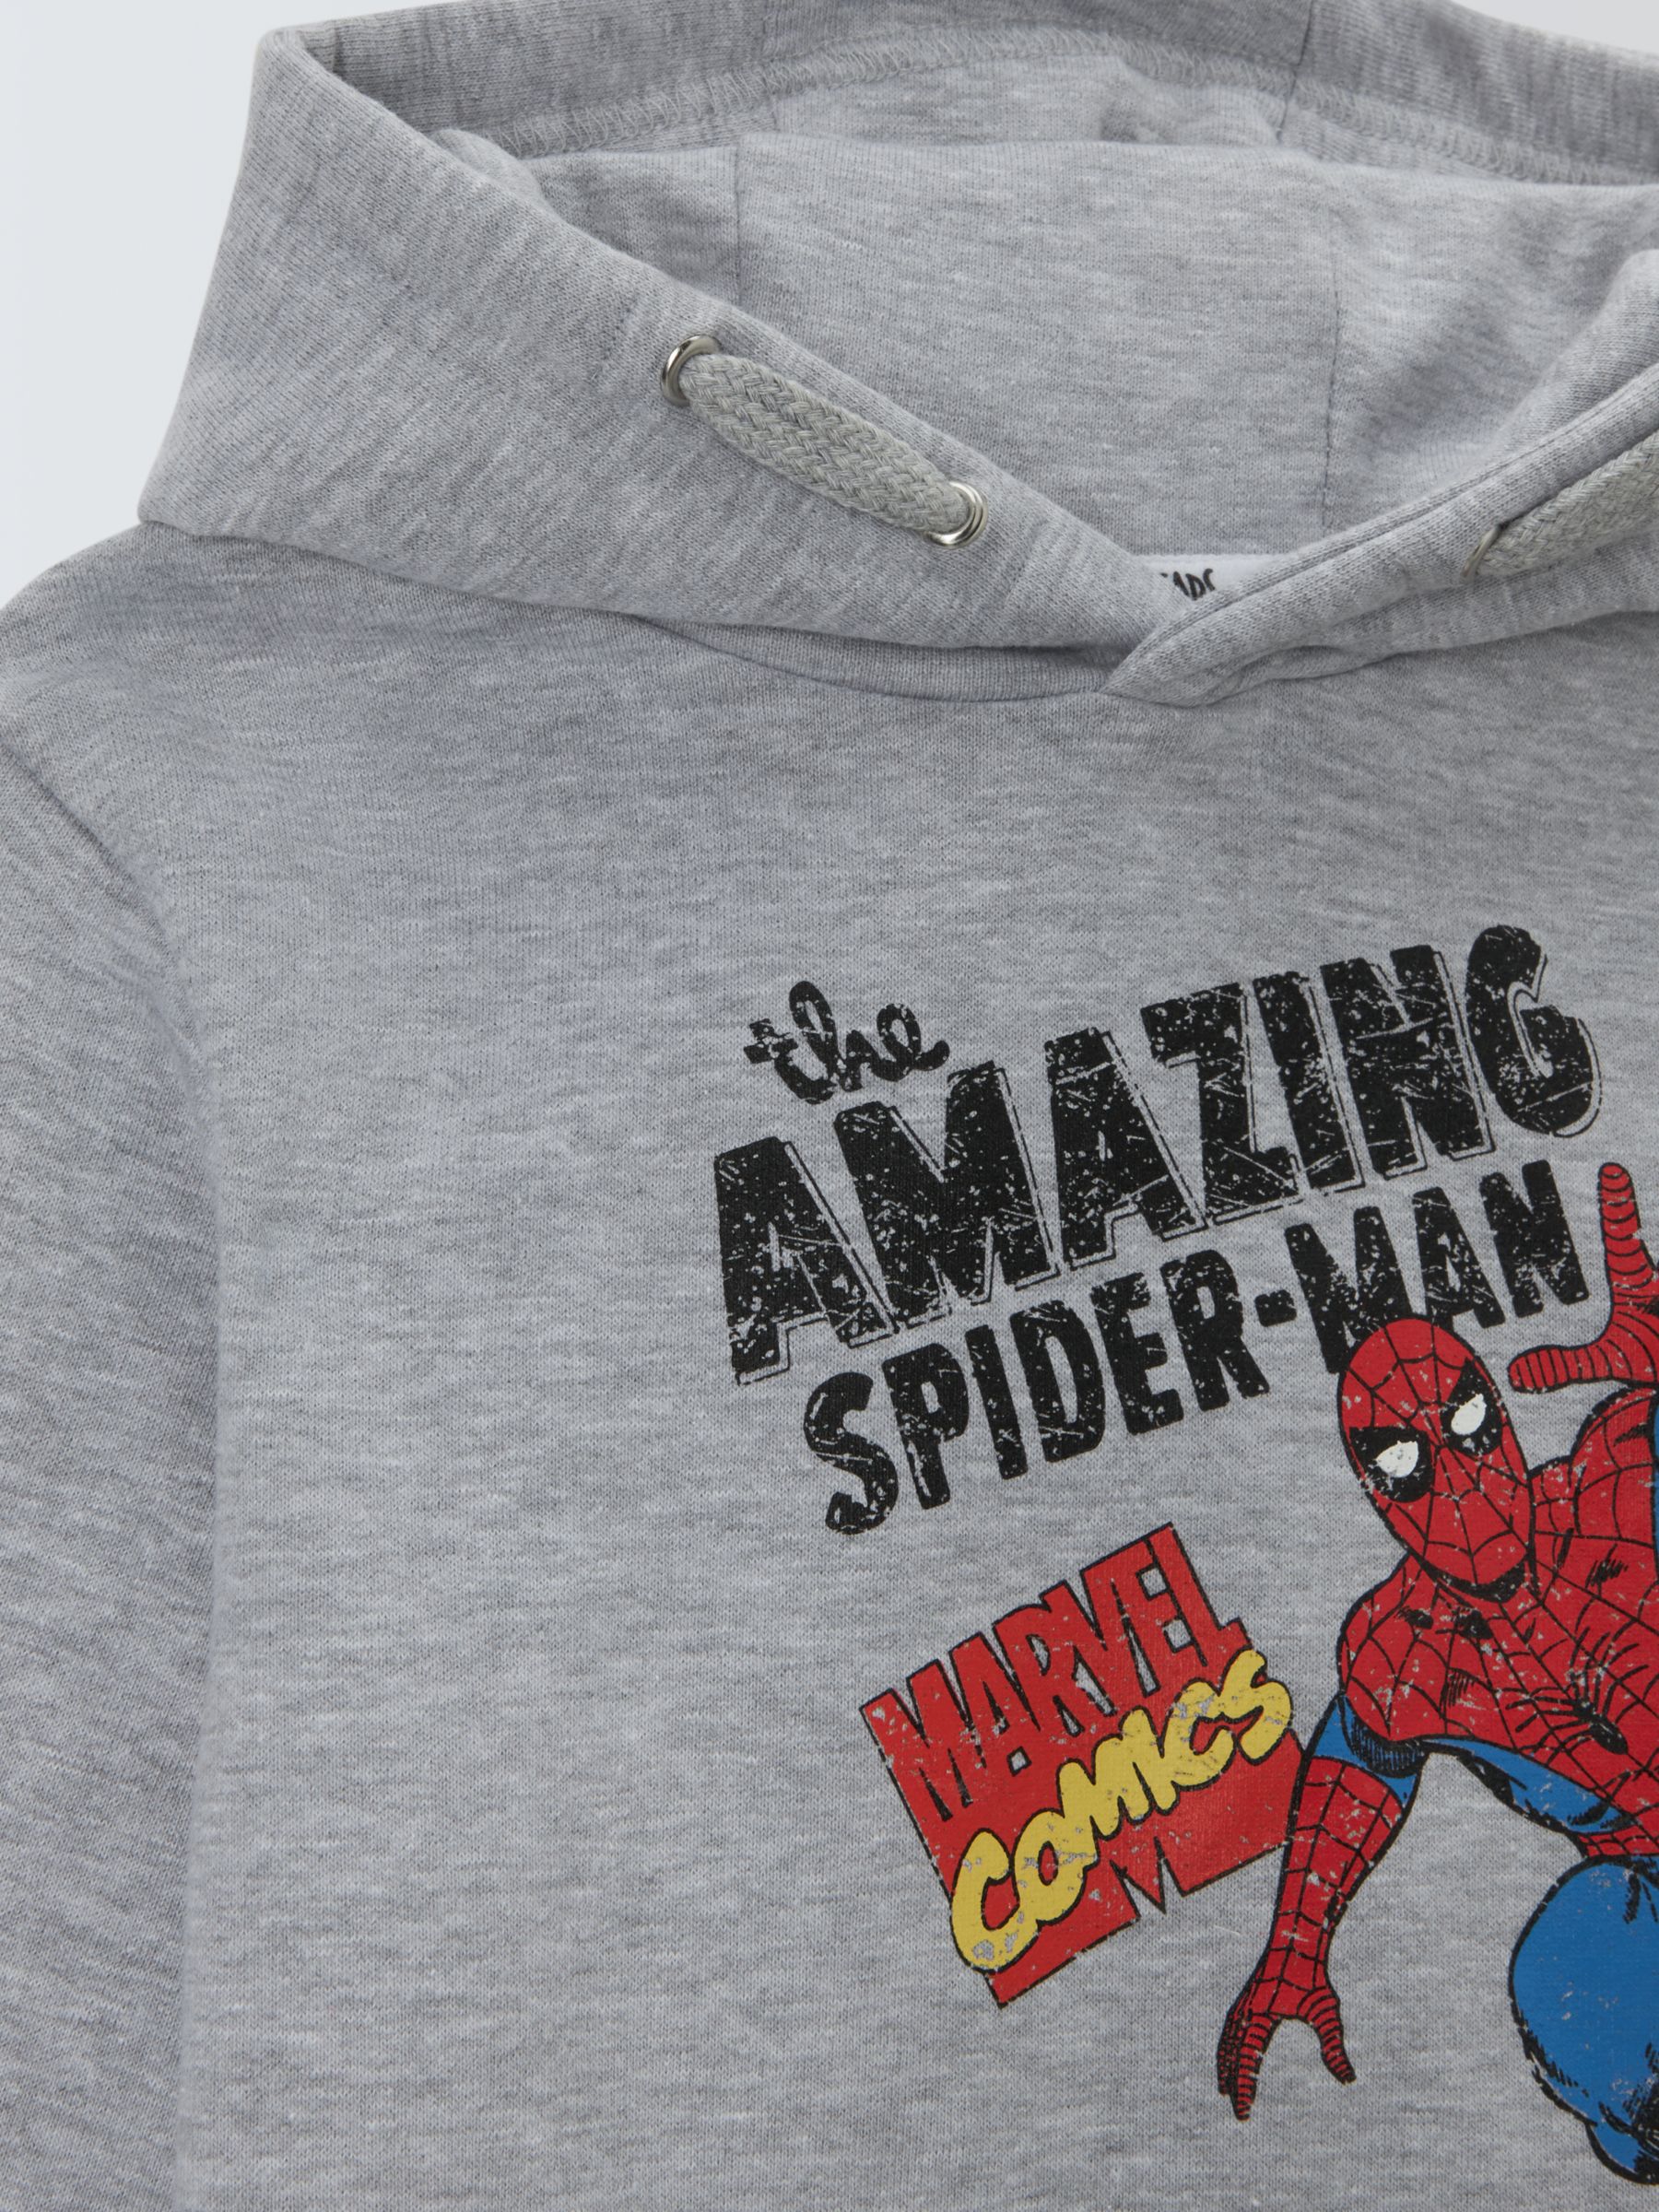 Brand Threads Kids' Spider-Man Hoodie, Grey, 8-9 years